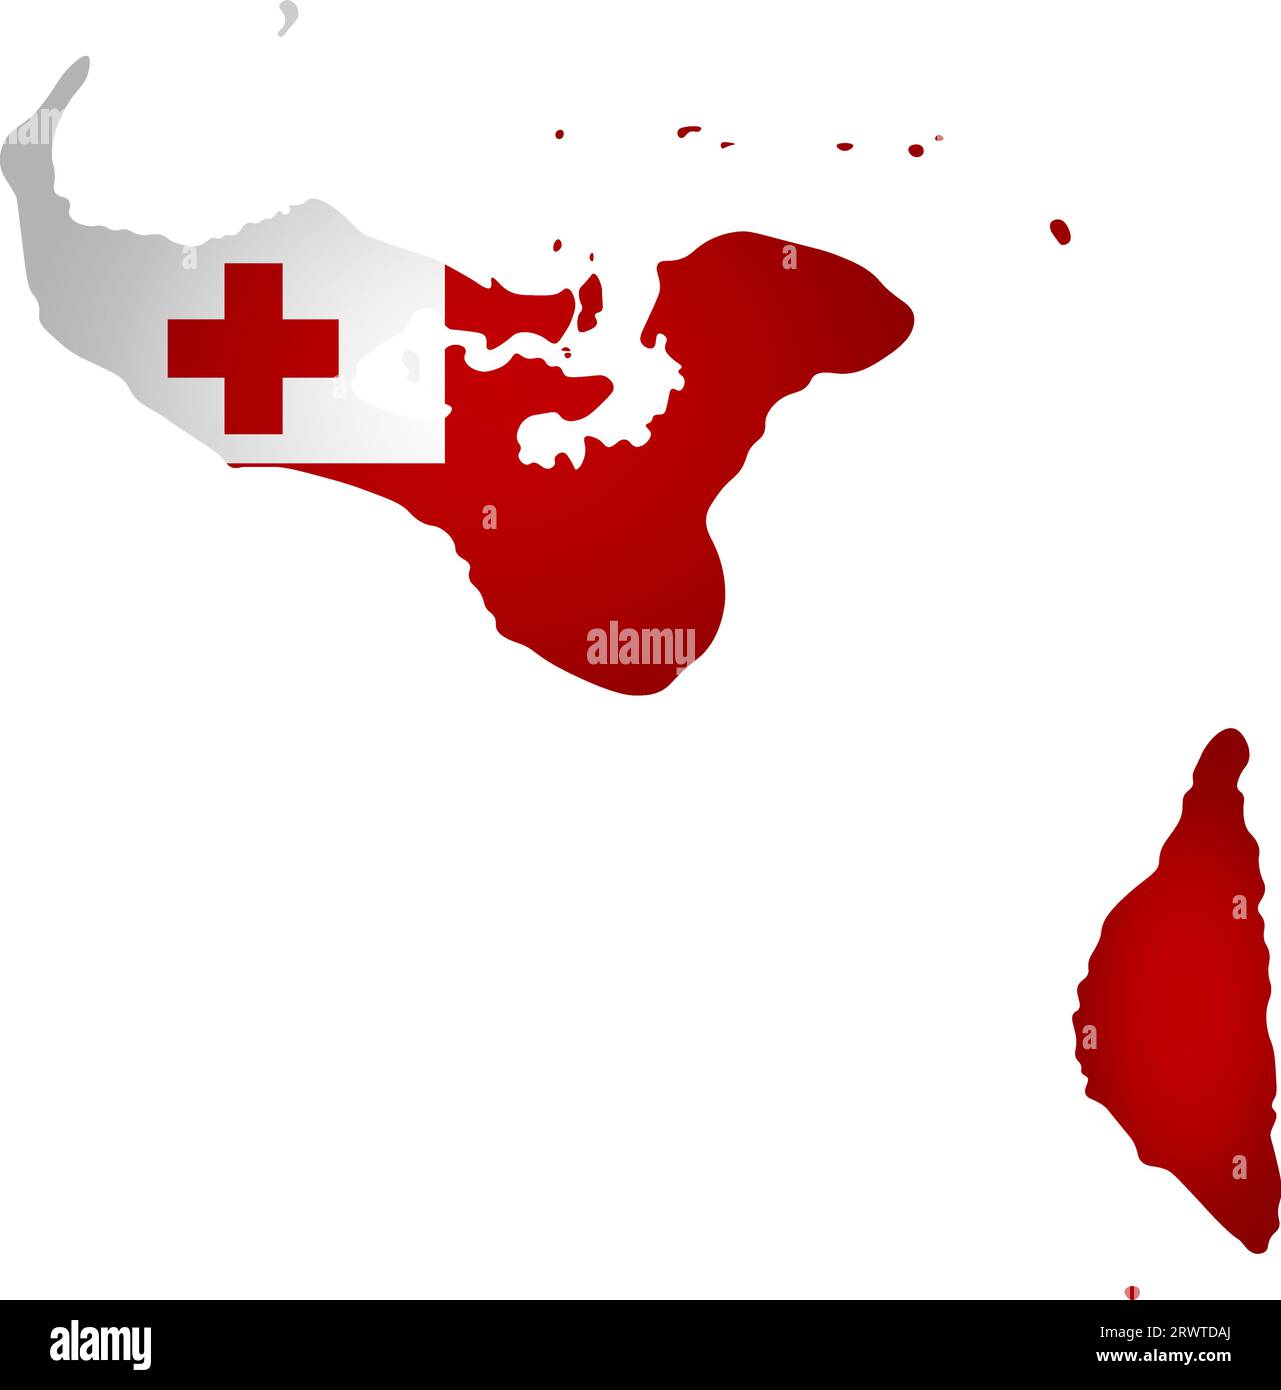 Abbildung mit Nationalflagge mit vereinfachter Form der Tonga-Karte (jpg). Volume Shadow auf der Karte. Stock Vektor